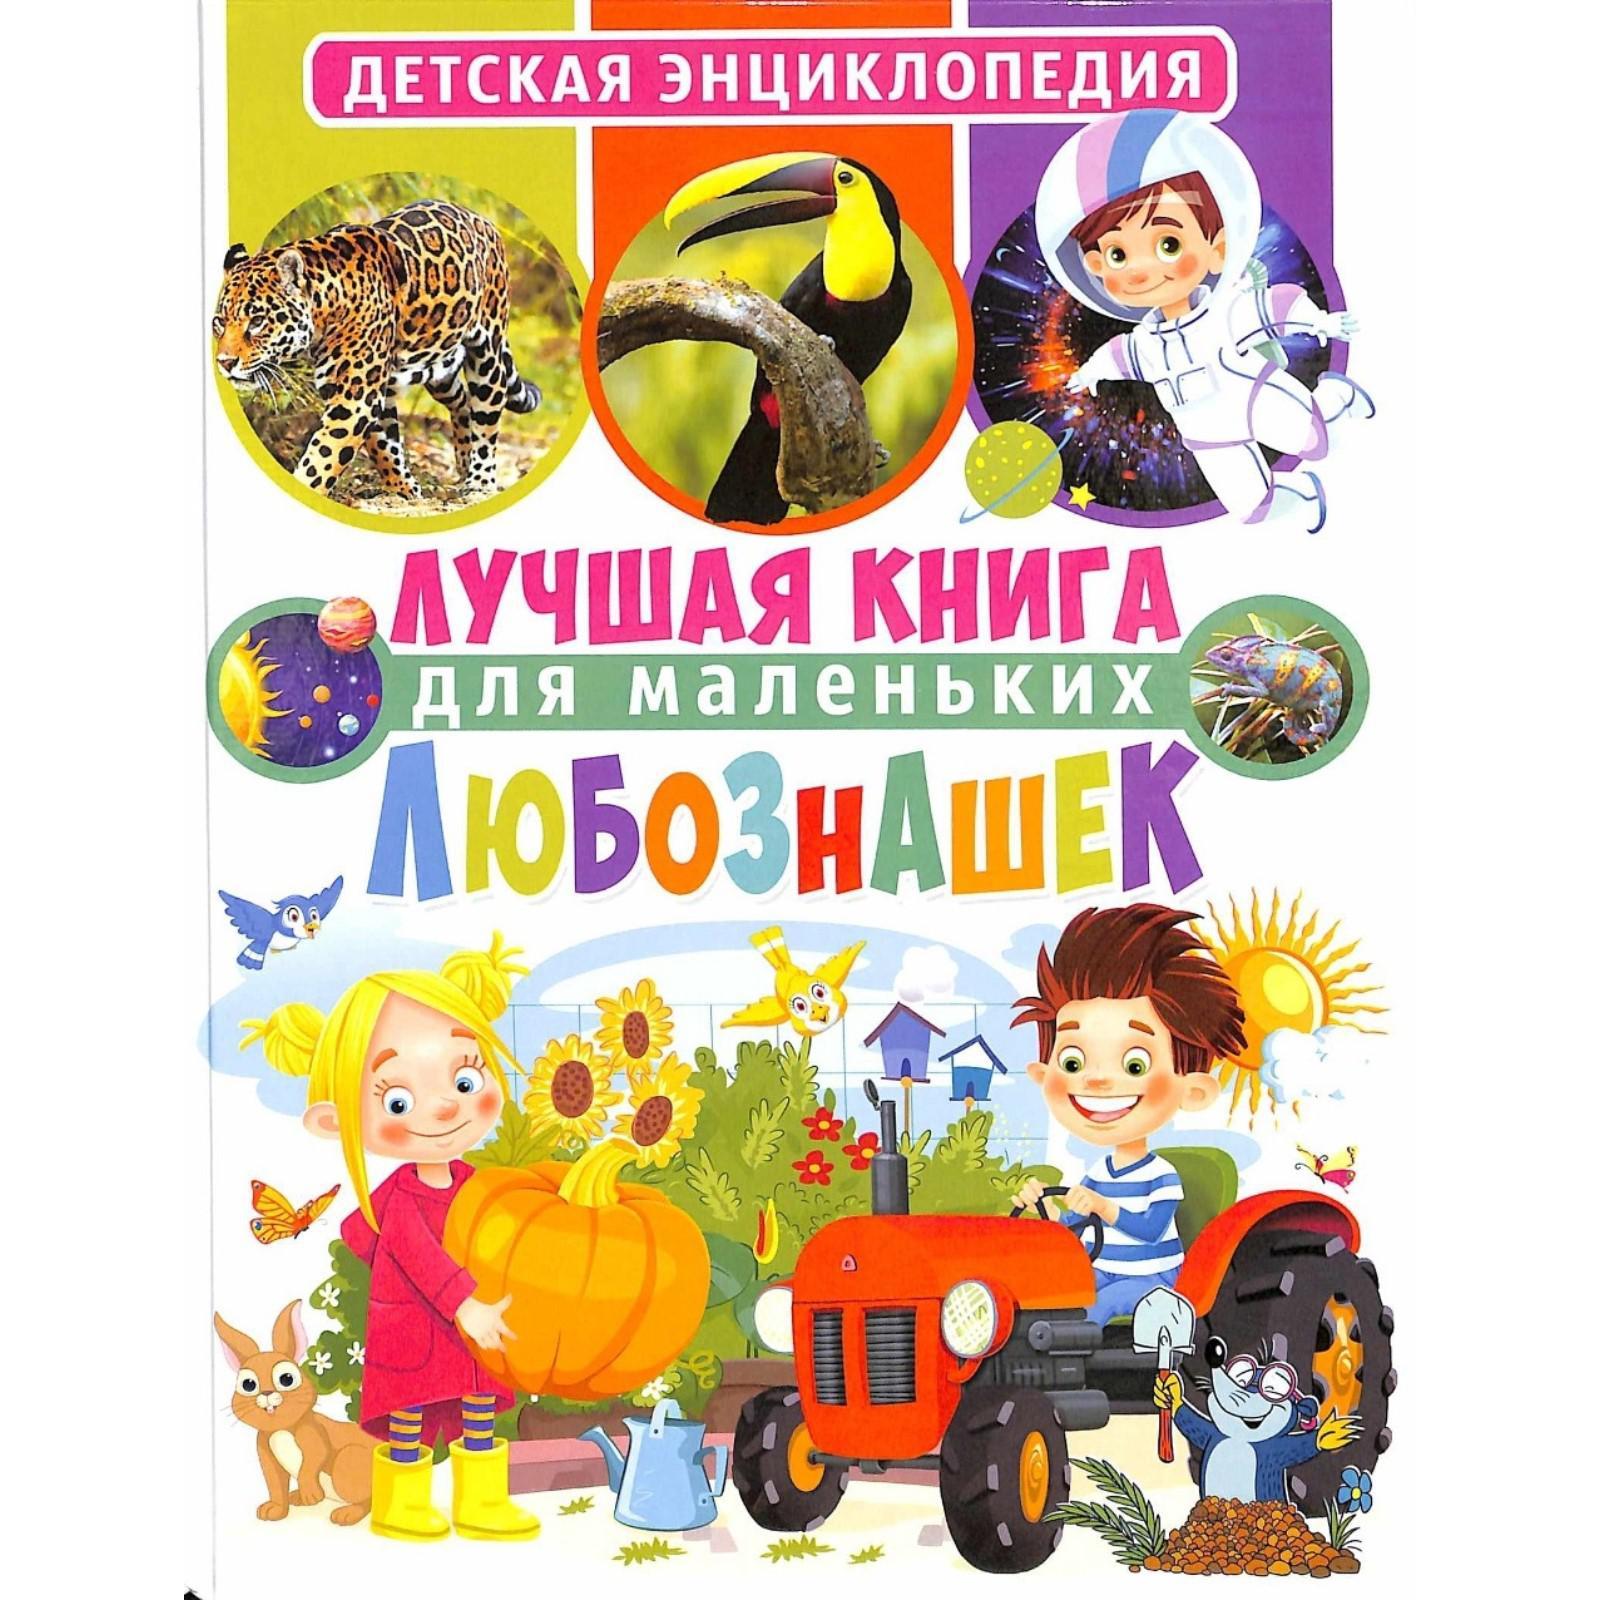 Лучшая книга для маленьких любознашек Детская энциклопедия "Владис"